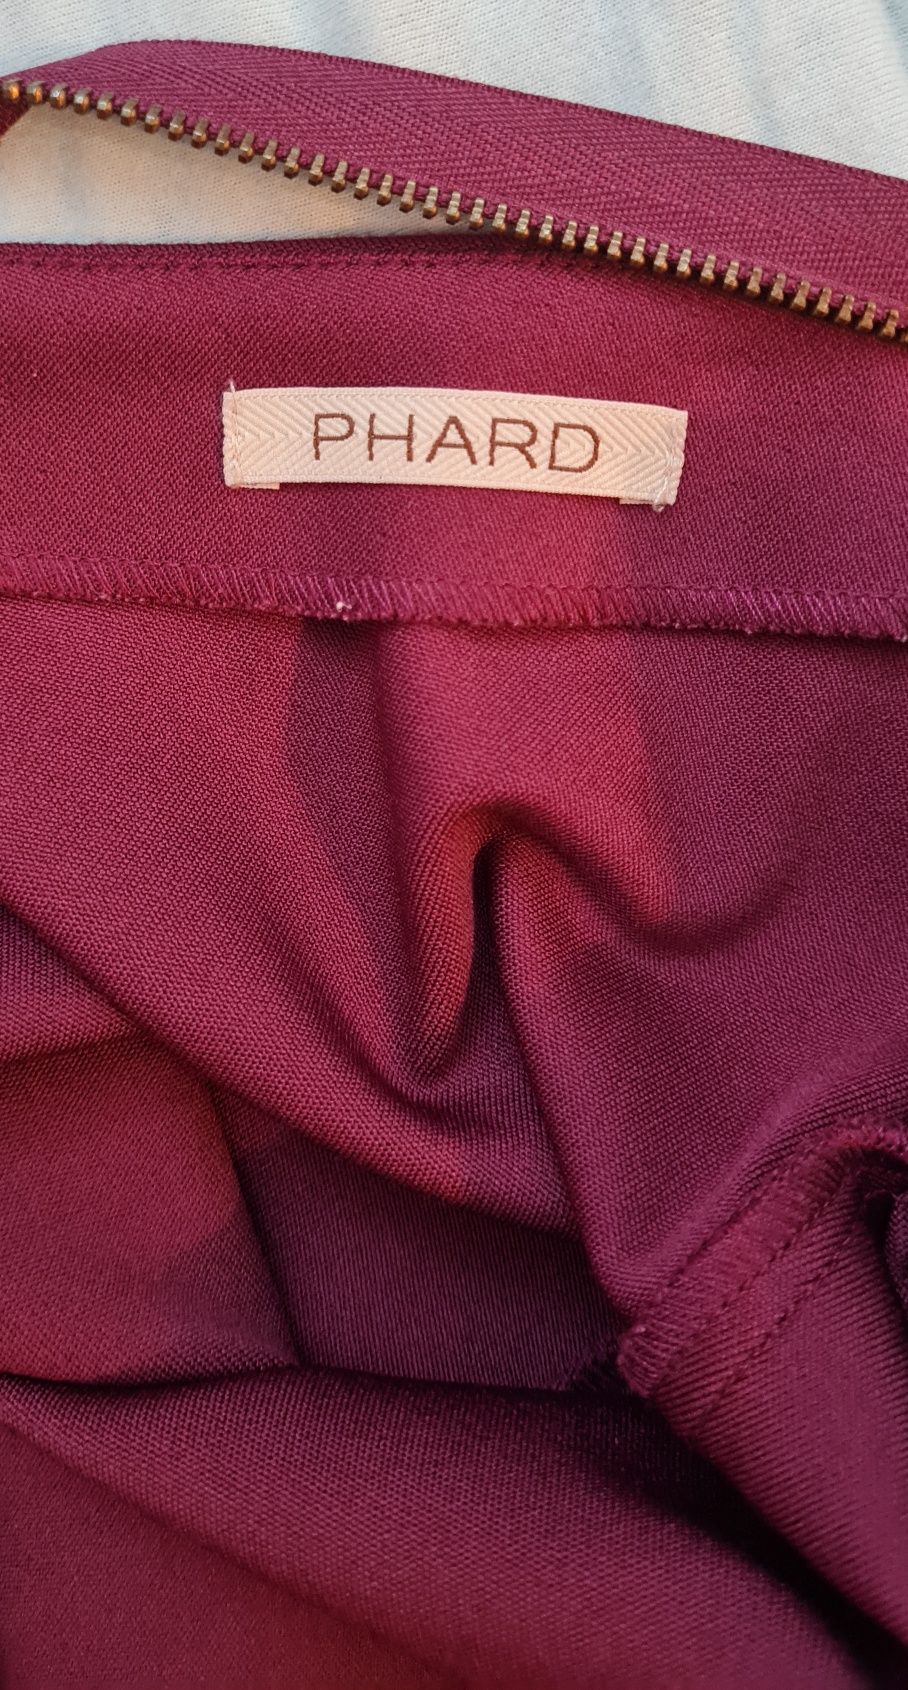 Дамска рокля PHARD в цвят бордо - р-р S